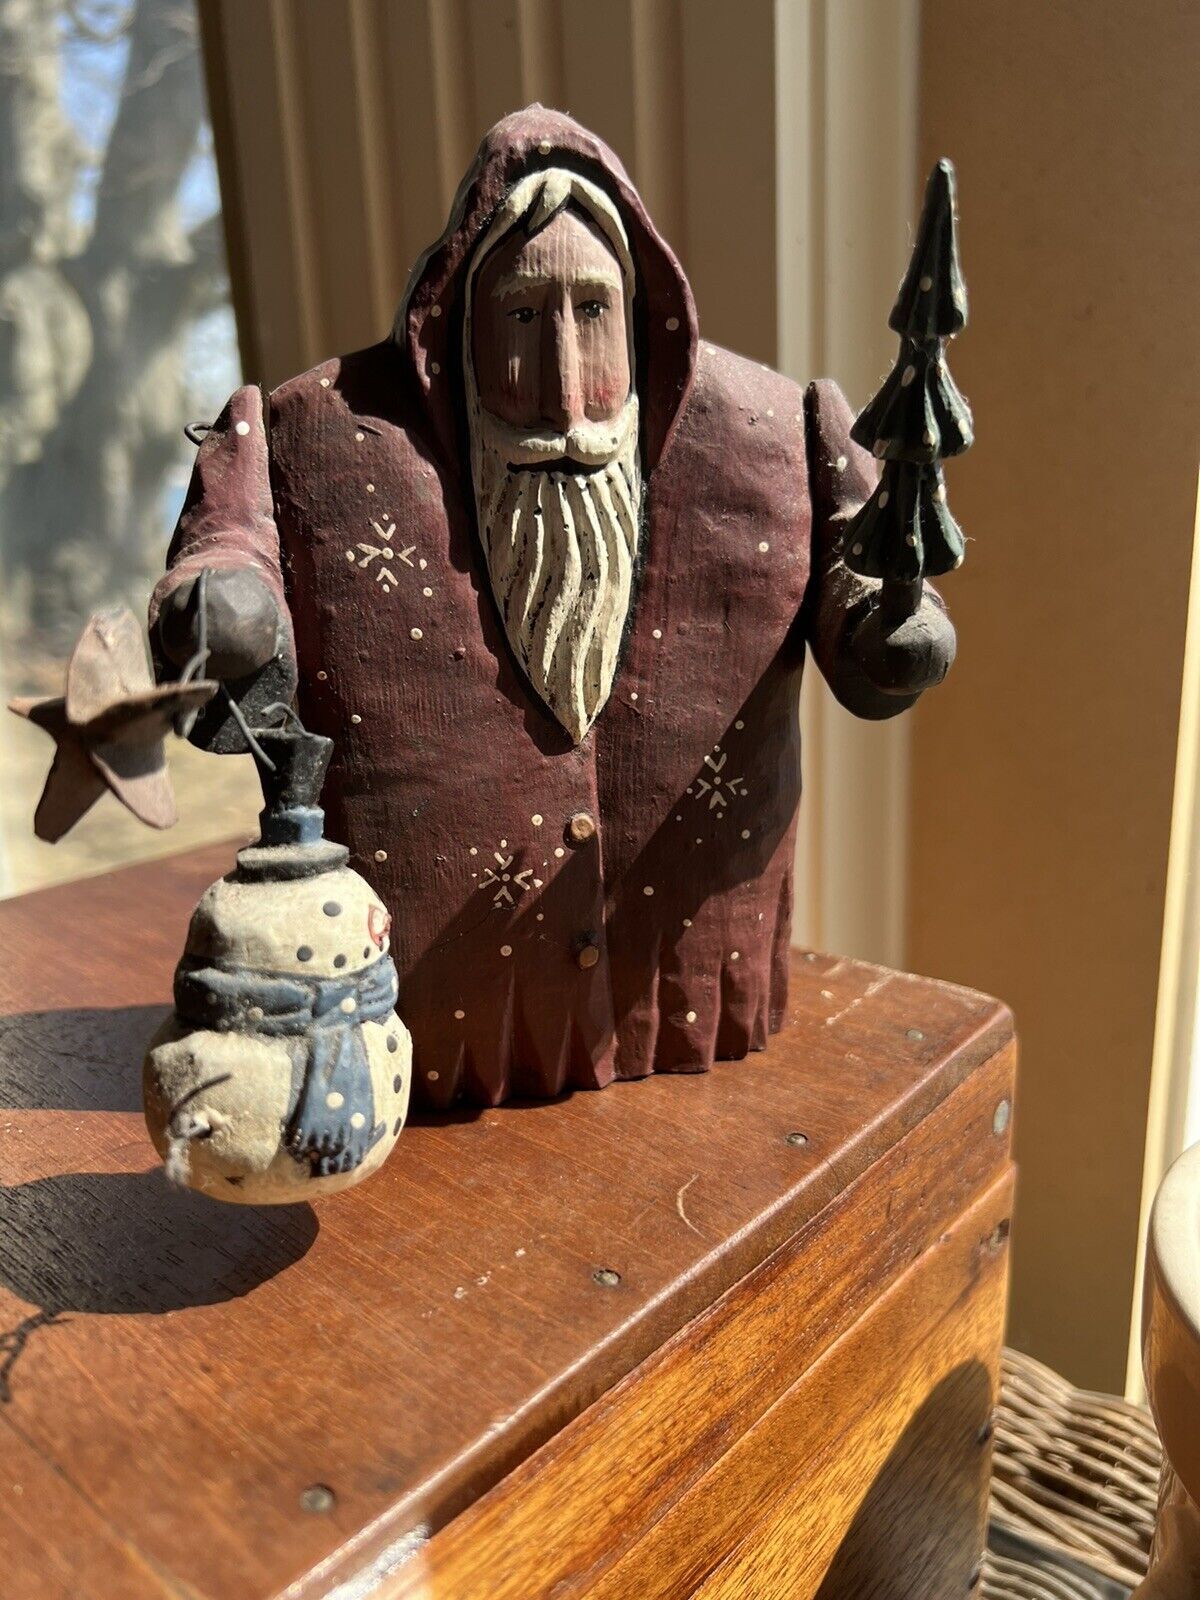 VTG Midwest Cannon Falls Greg Guedel Folk Art Carved Wood Santa Figure 